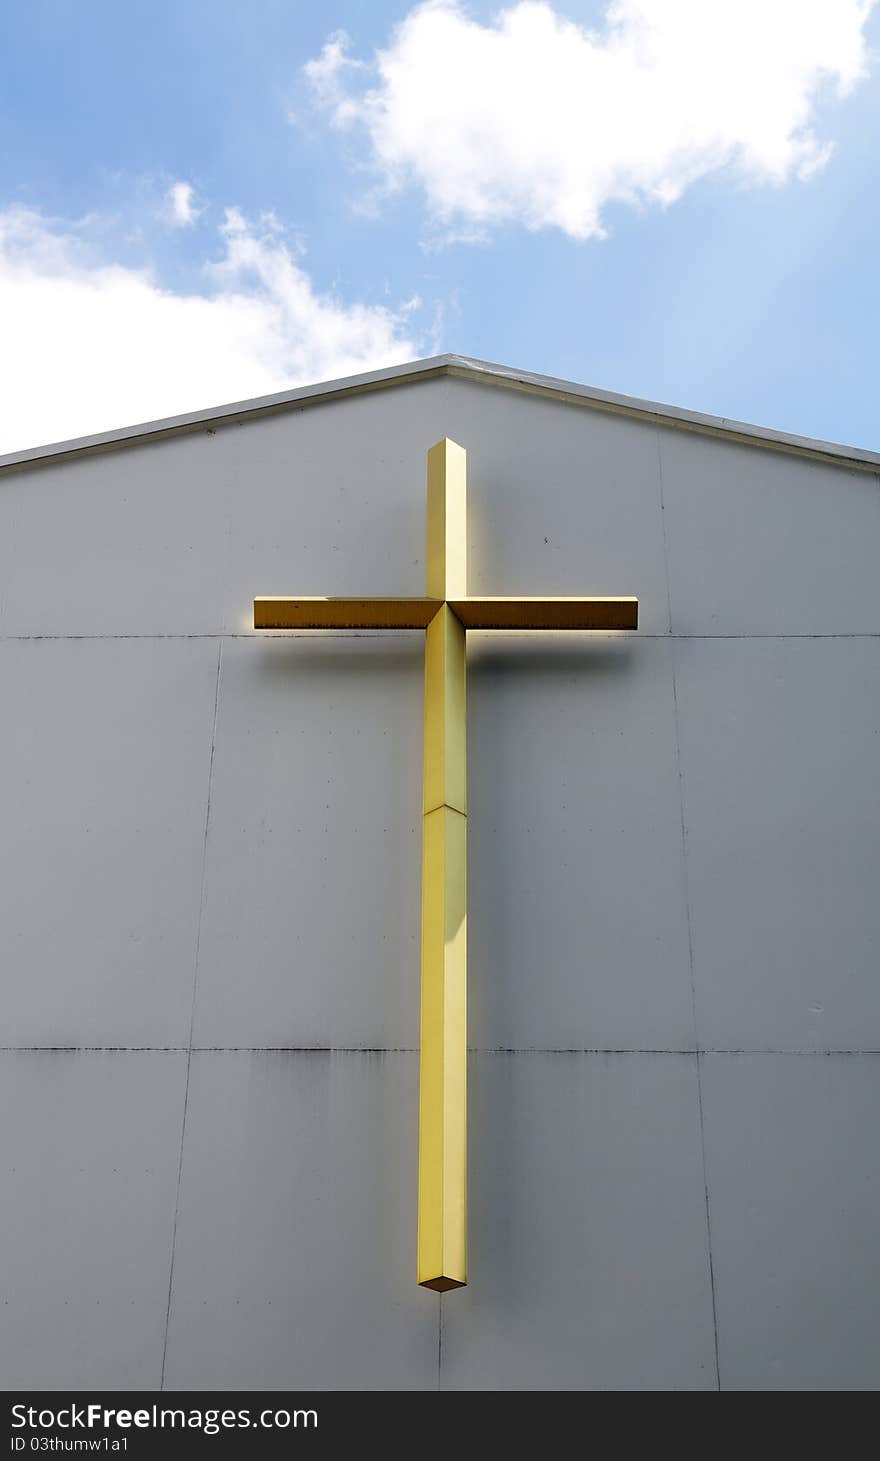 The golden cross at church